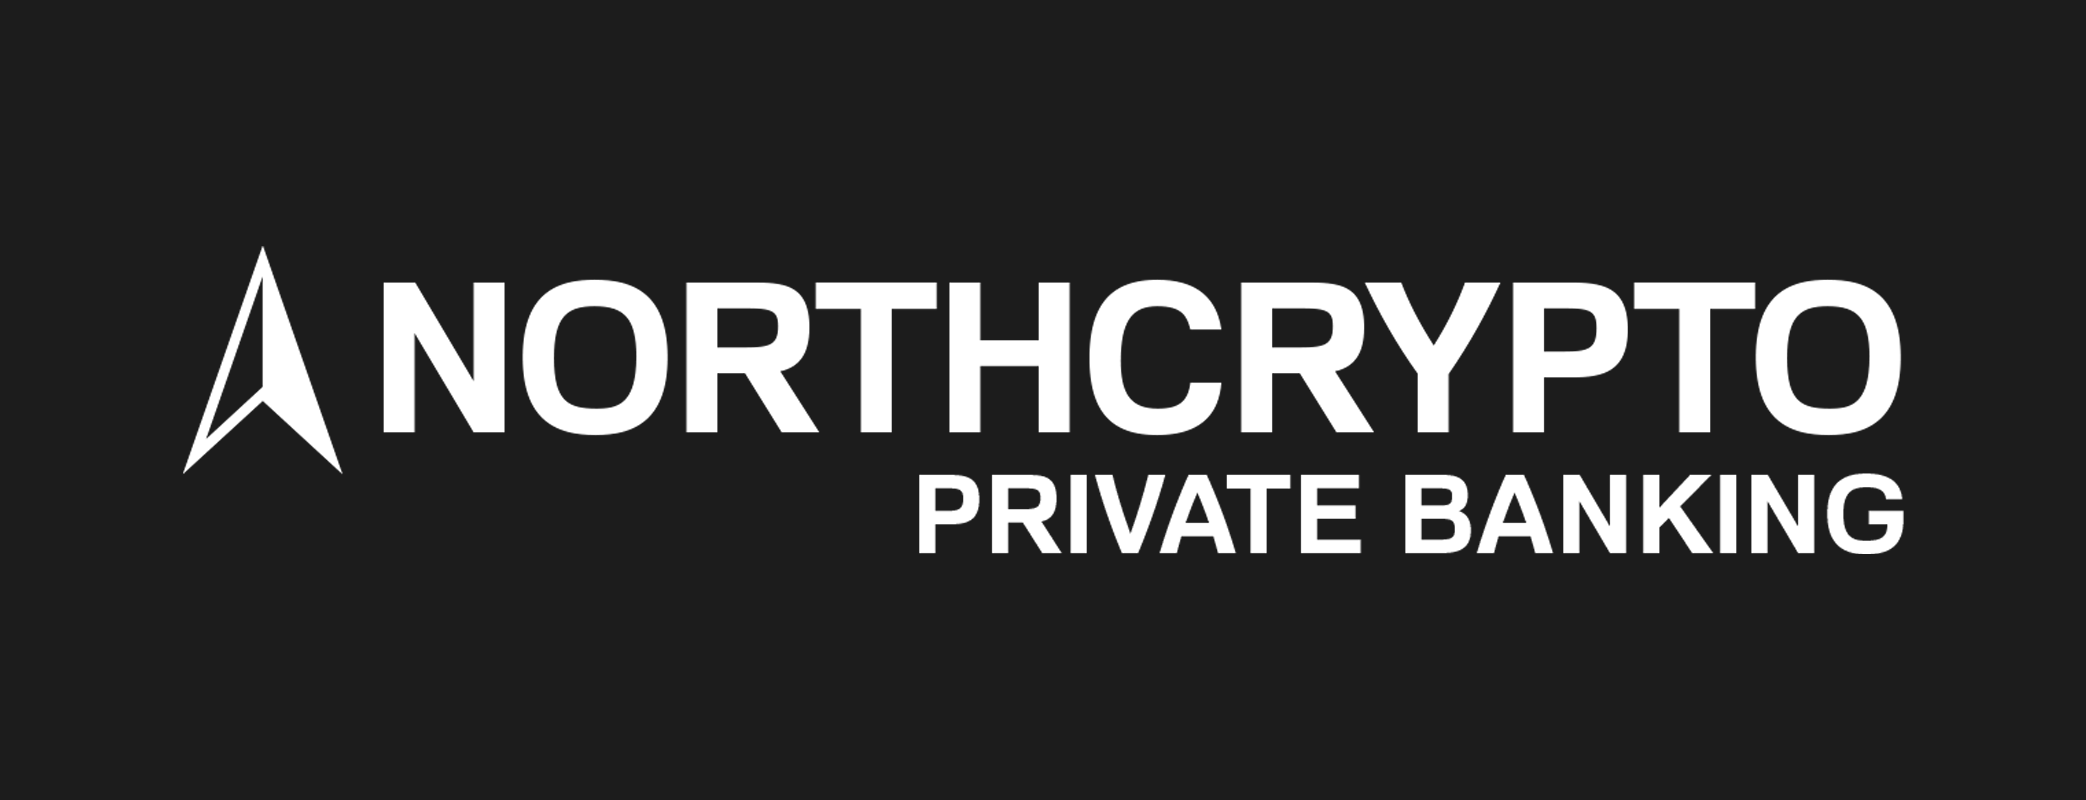 Tiedote: Suomalainen kryptovaluuttayritys Northcrypto lanseerasi Private Banking -palvelun